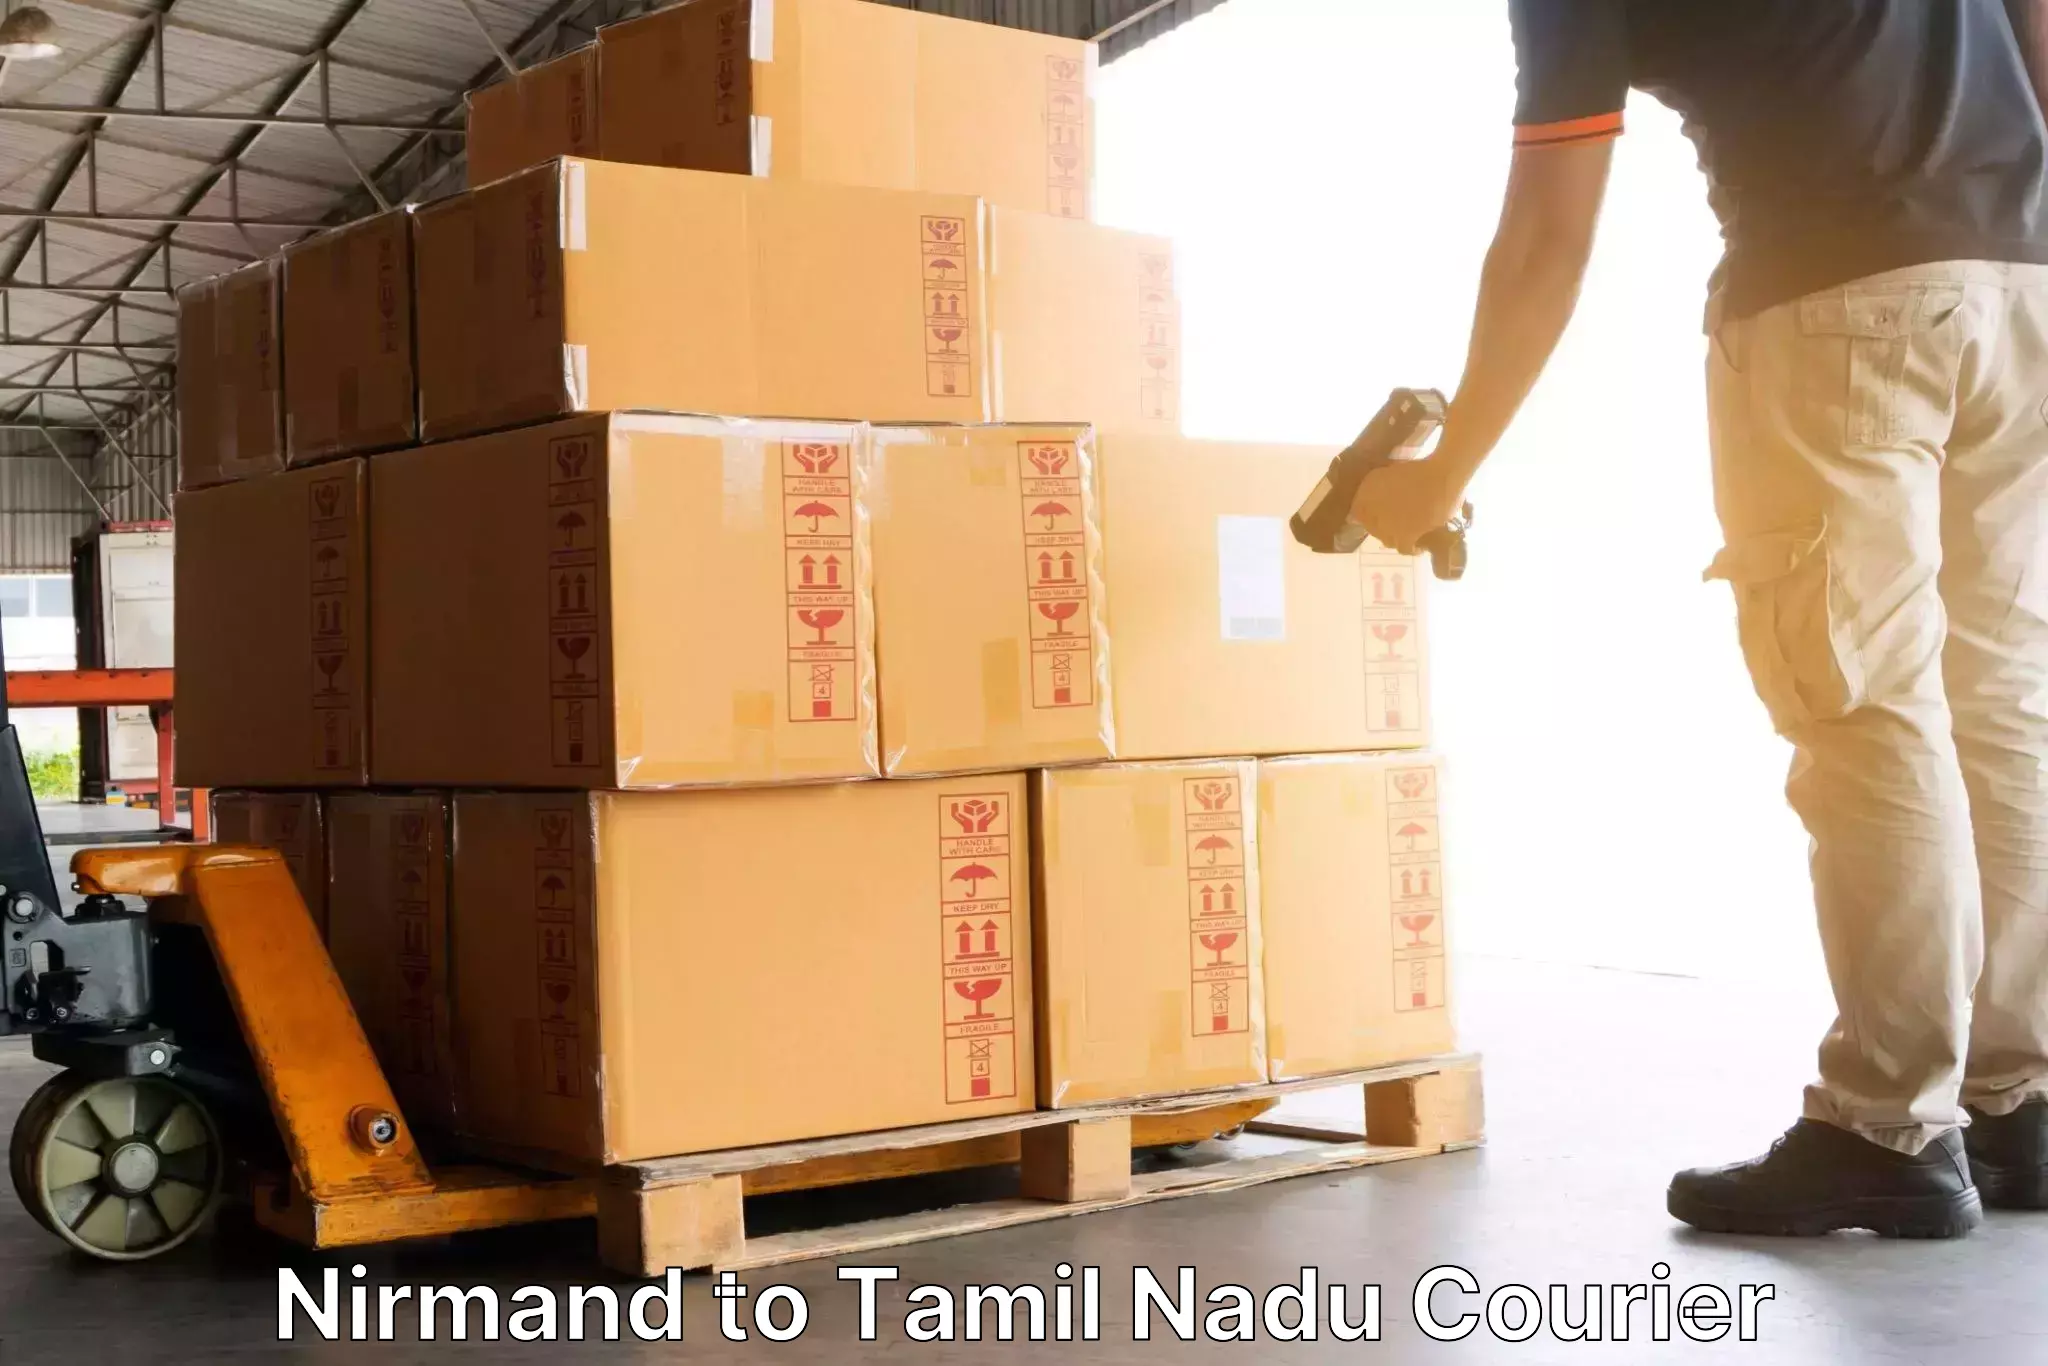 Express mail service Nirmand to Tamil Nadu